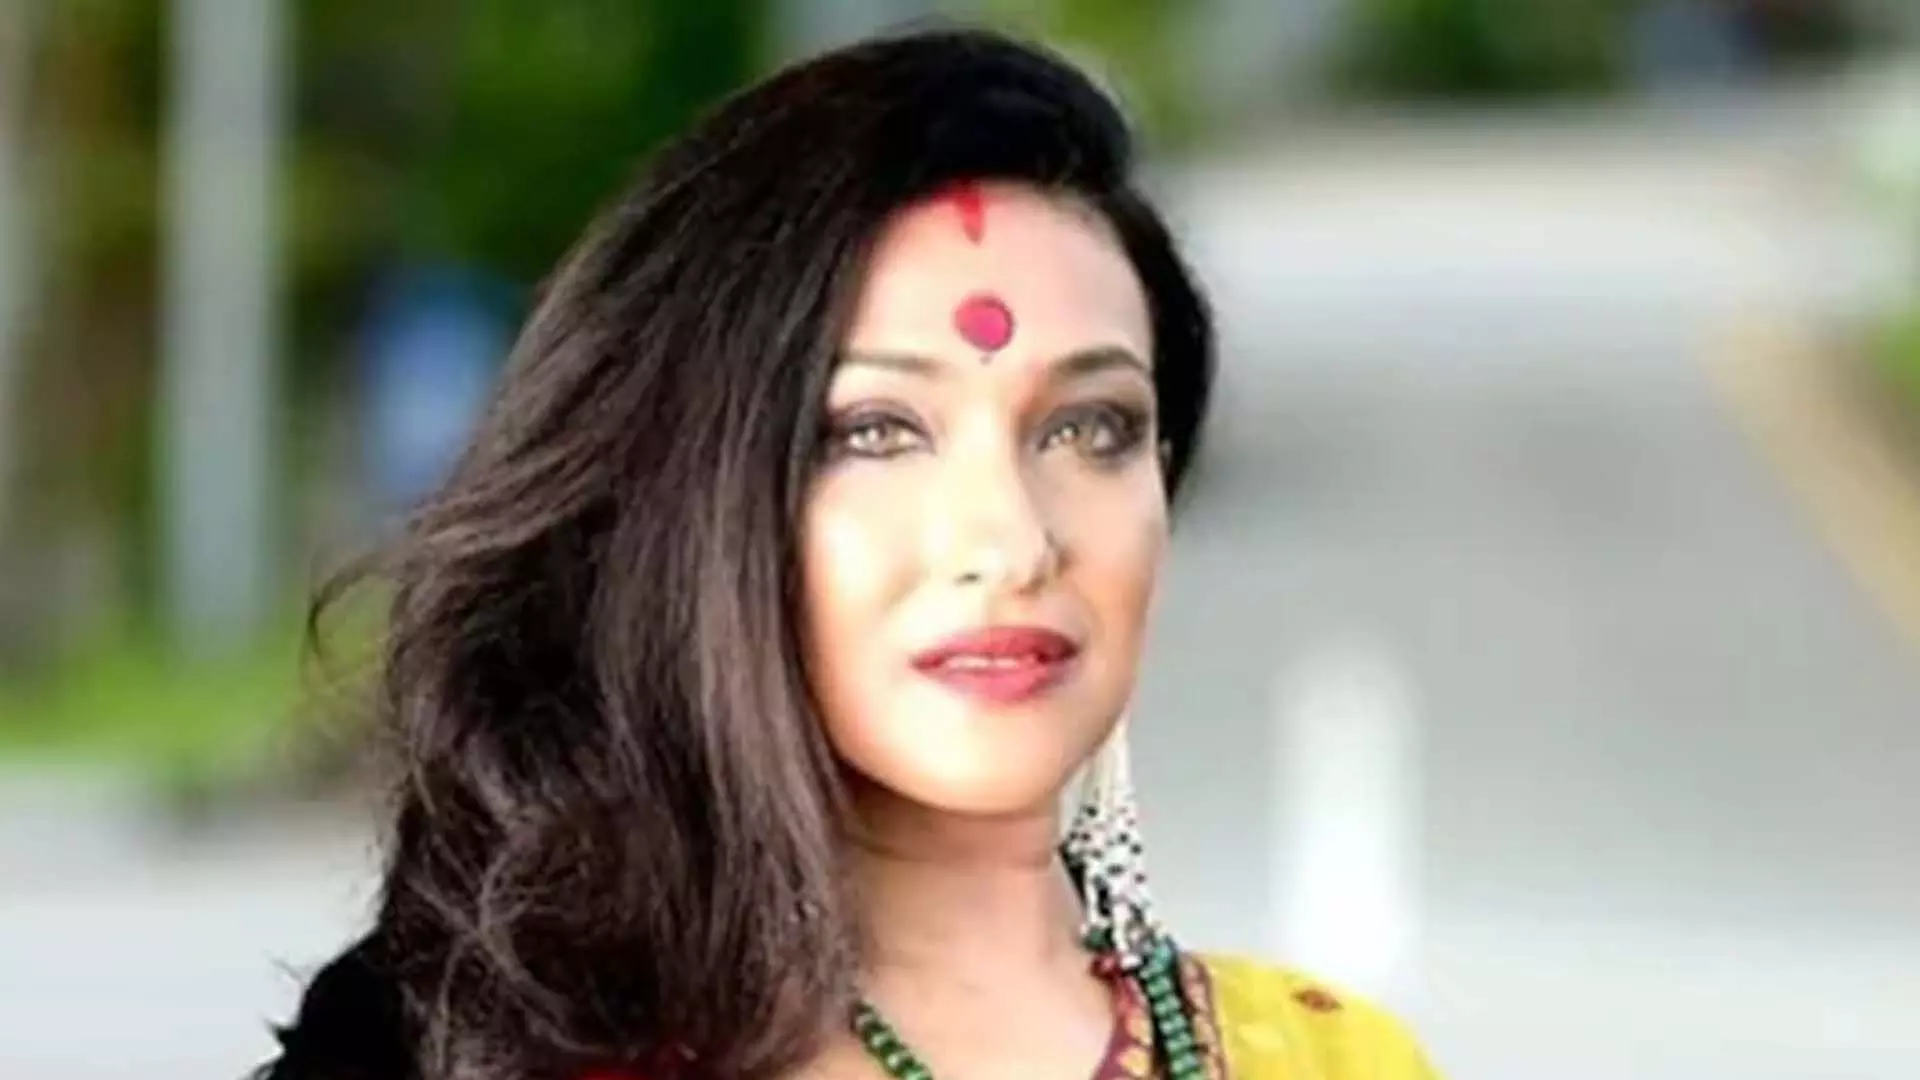 Kolkata: बंगाल राशन वितरण मामले में अभिनेत्री रितुपर्णा सेनगुप्ता के खिलाफ नया समन जारी